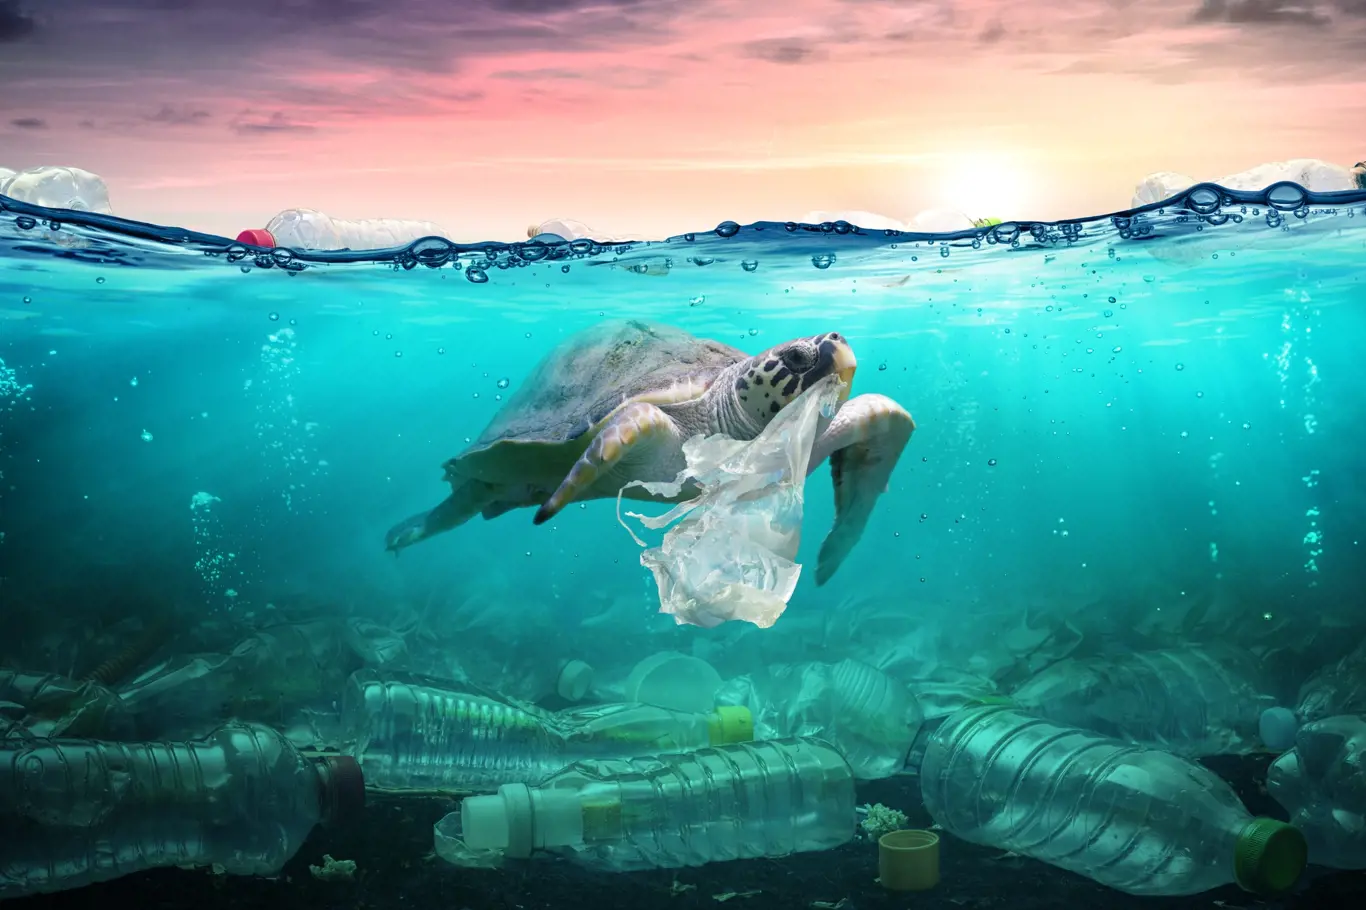 přibližně 14 milionů tun plastů končí v oceánech po celém světě. 